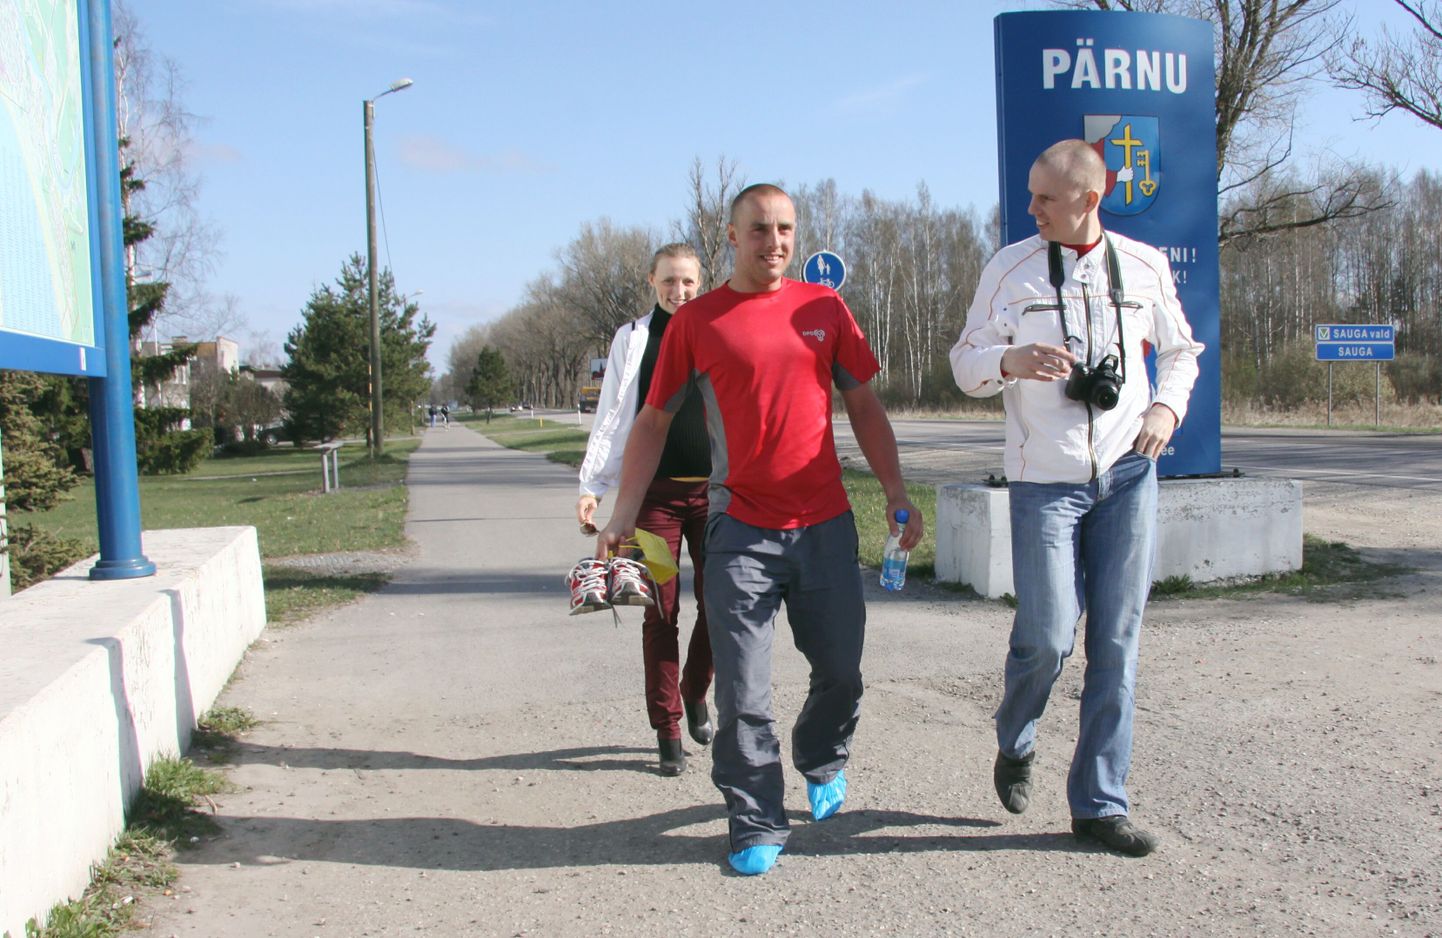 Vaatamata kehvale ilmale kutsutakse inimesi üles detsembris rohkem jala käima. Pildil punases Kristjan Kahn, kes käis jala Tallinnast Pärnusse.